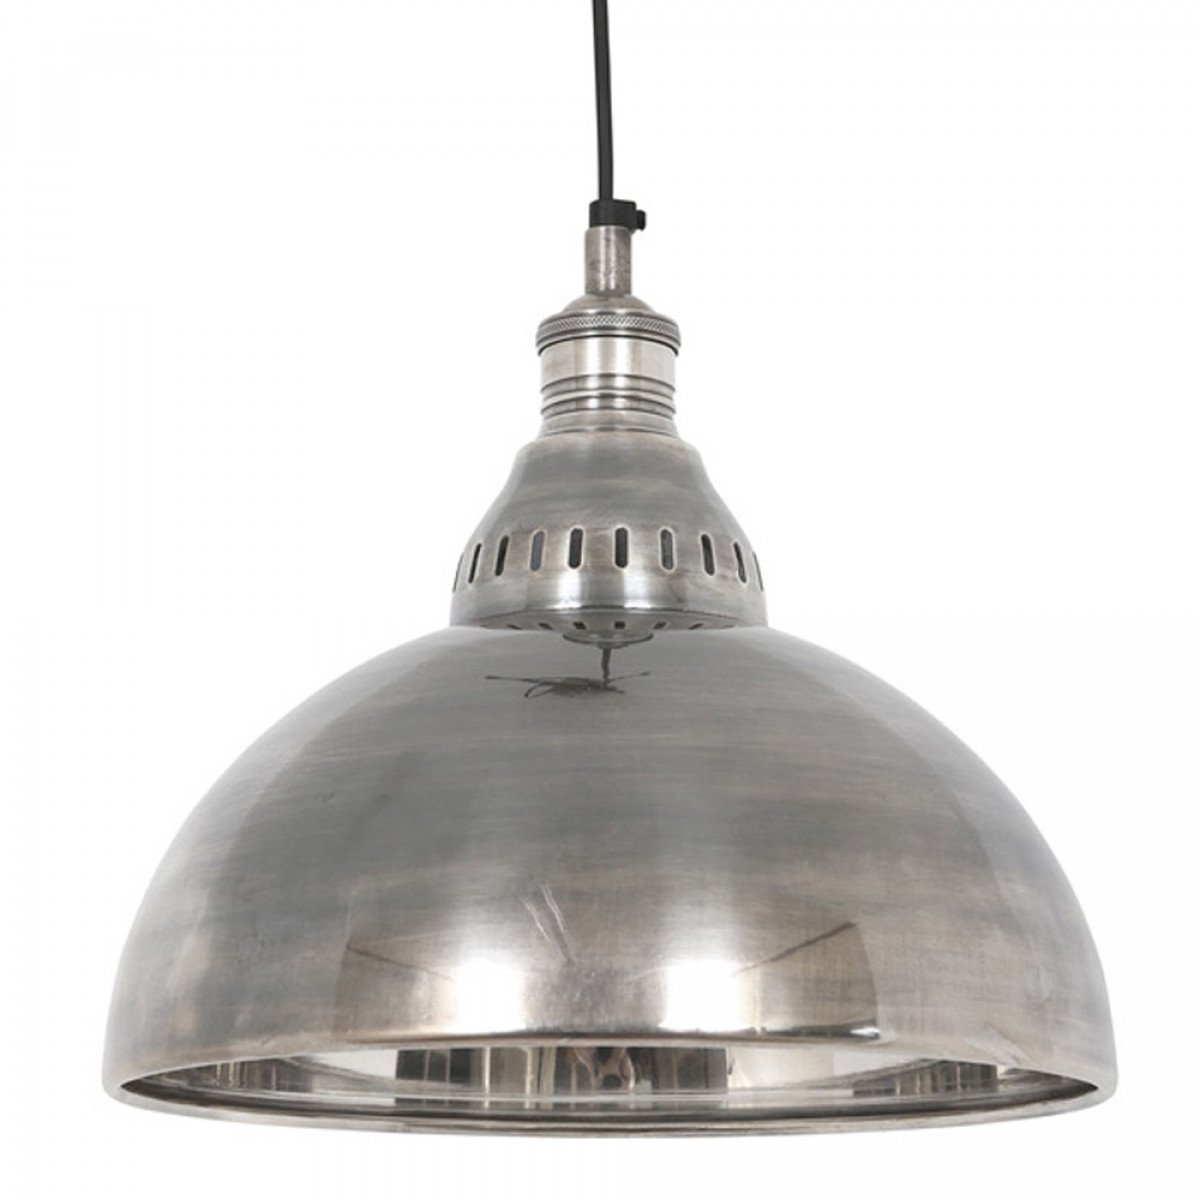 Lampe suspendue Seattle (58308) argent - Industriel & vintage|Nostalux.fr